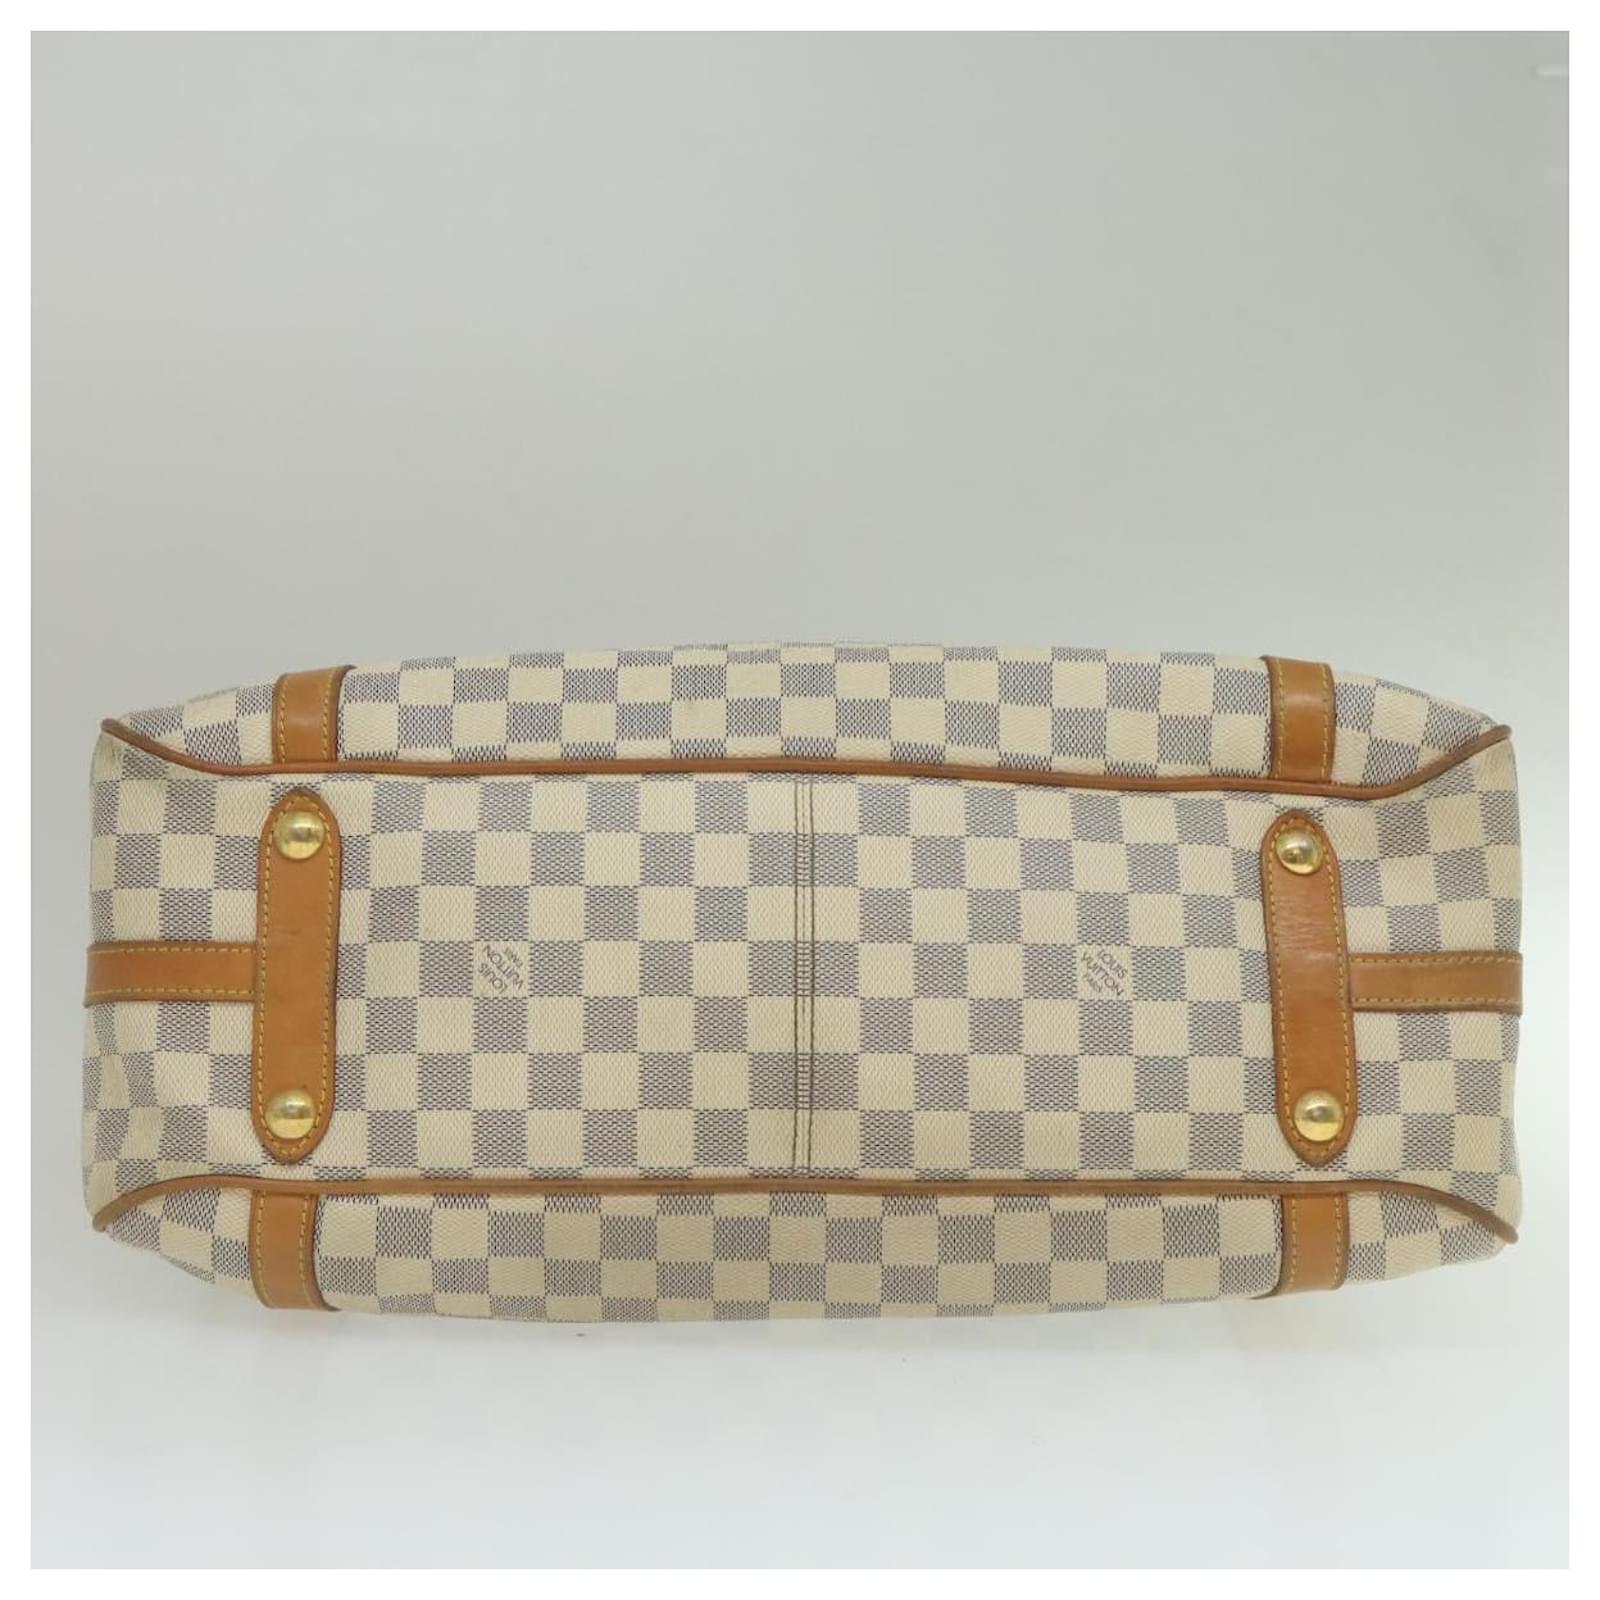 Auth Louis Vuitton Damier Azur Stresa GM N42221 Women's Shoulder Bag